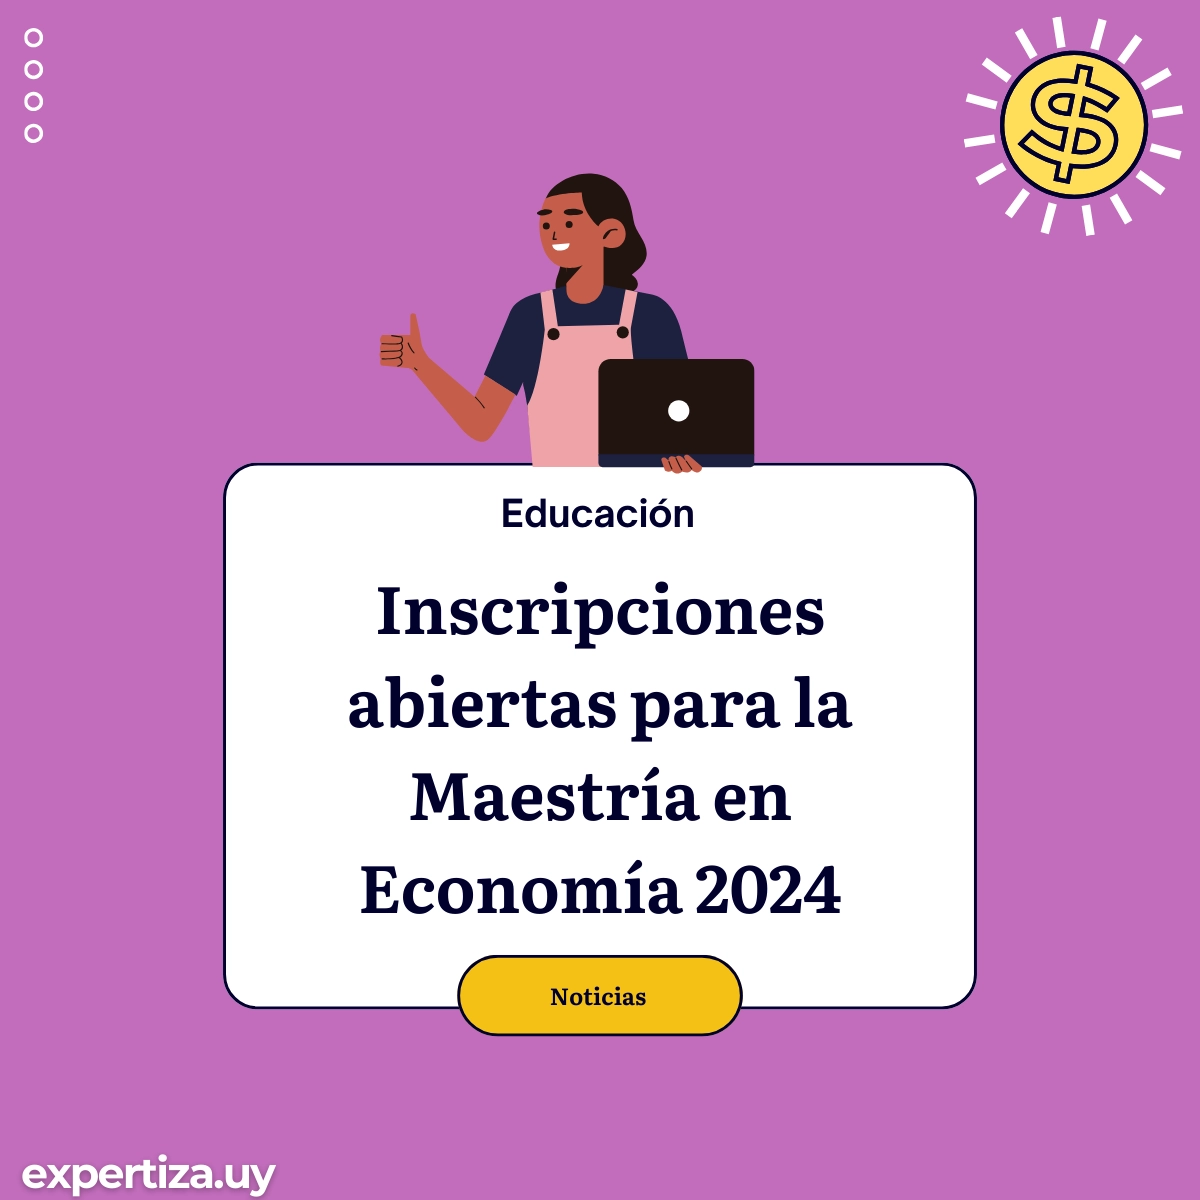 Inscripciones abiertas para la Maestría en Economía 2024.